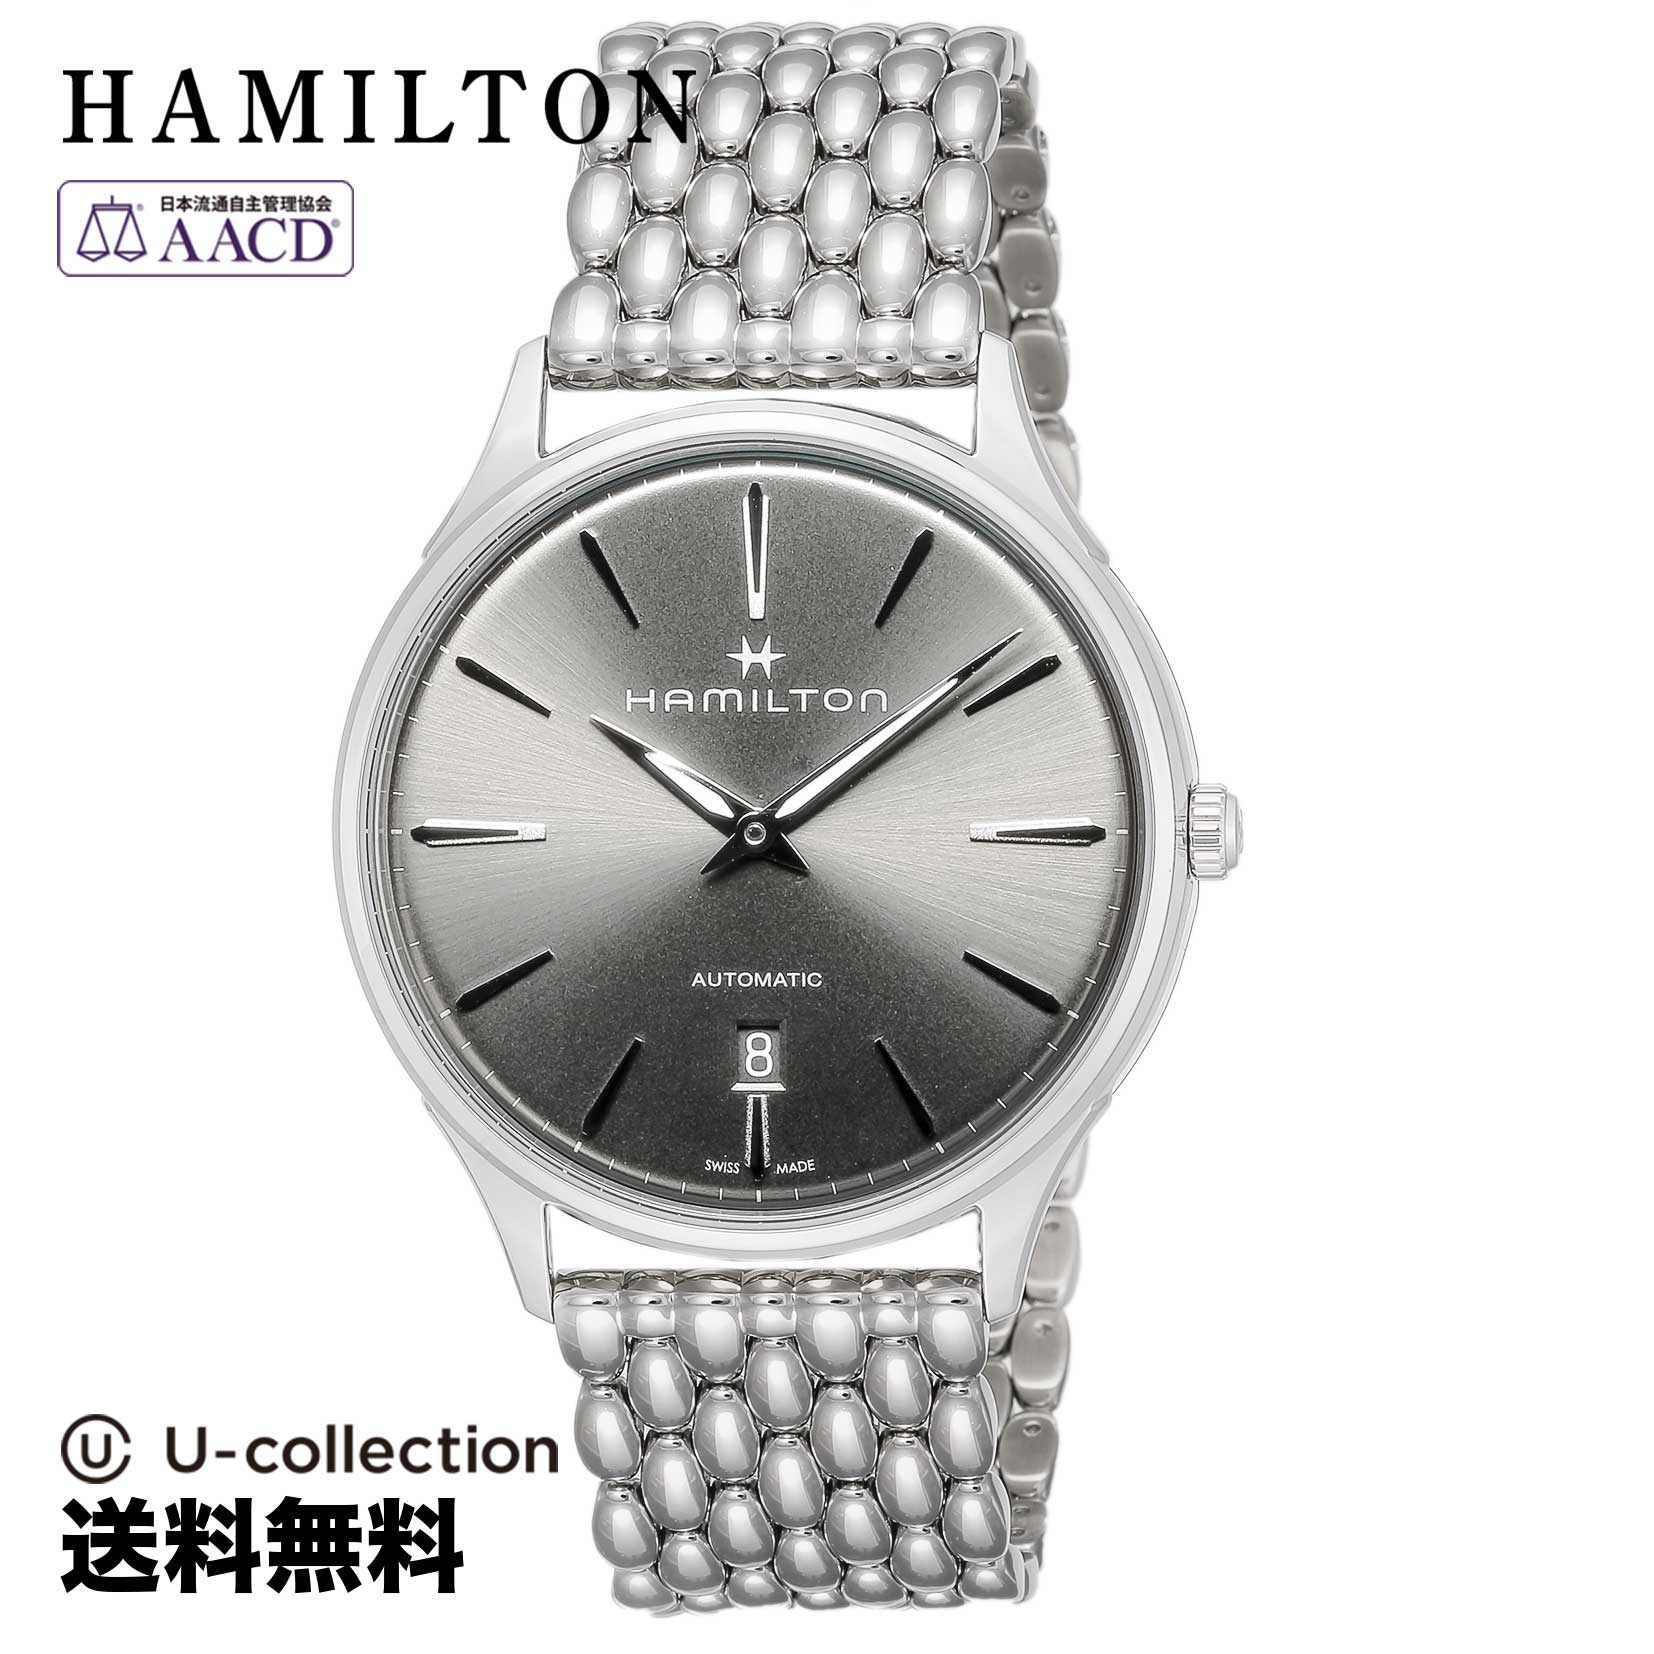 ファッションなデザイン / Jazzmaster HAMILTON(ハミルトン) ハミルトン【腕時計】 ジャズマスター ブランド 時計 H38525181 自動巻 グレー メンズ メンズ腕時計